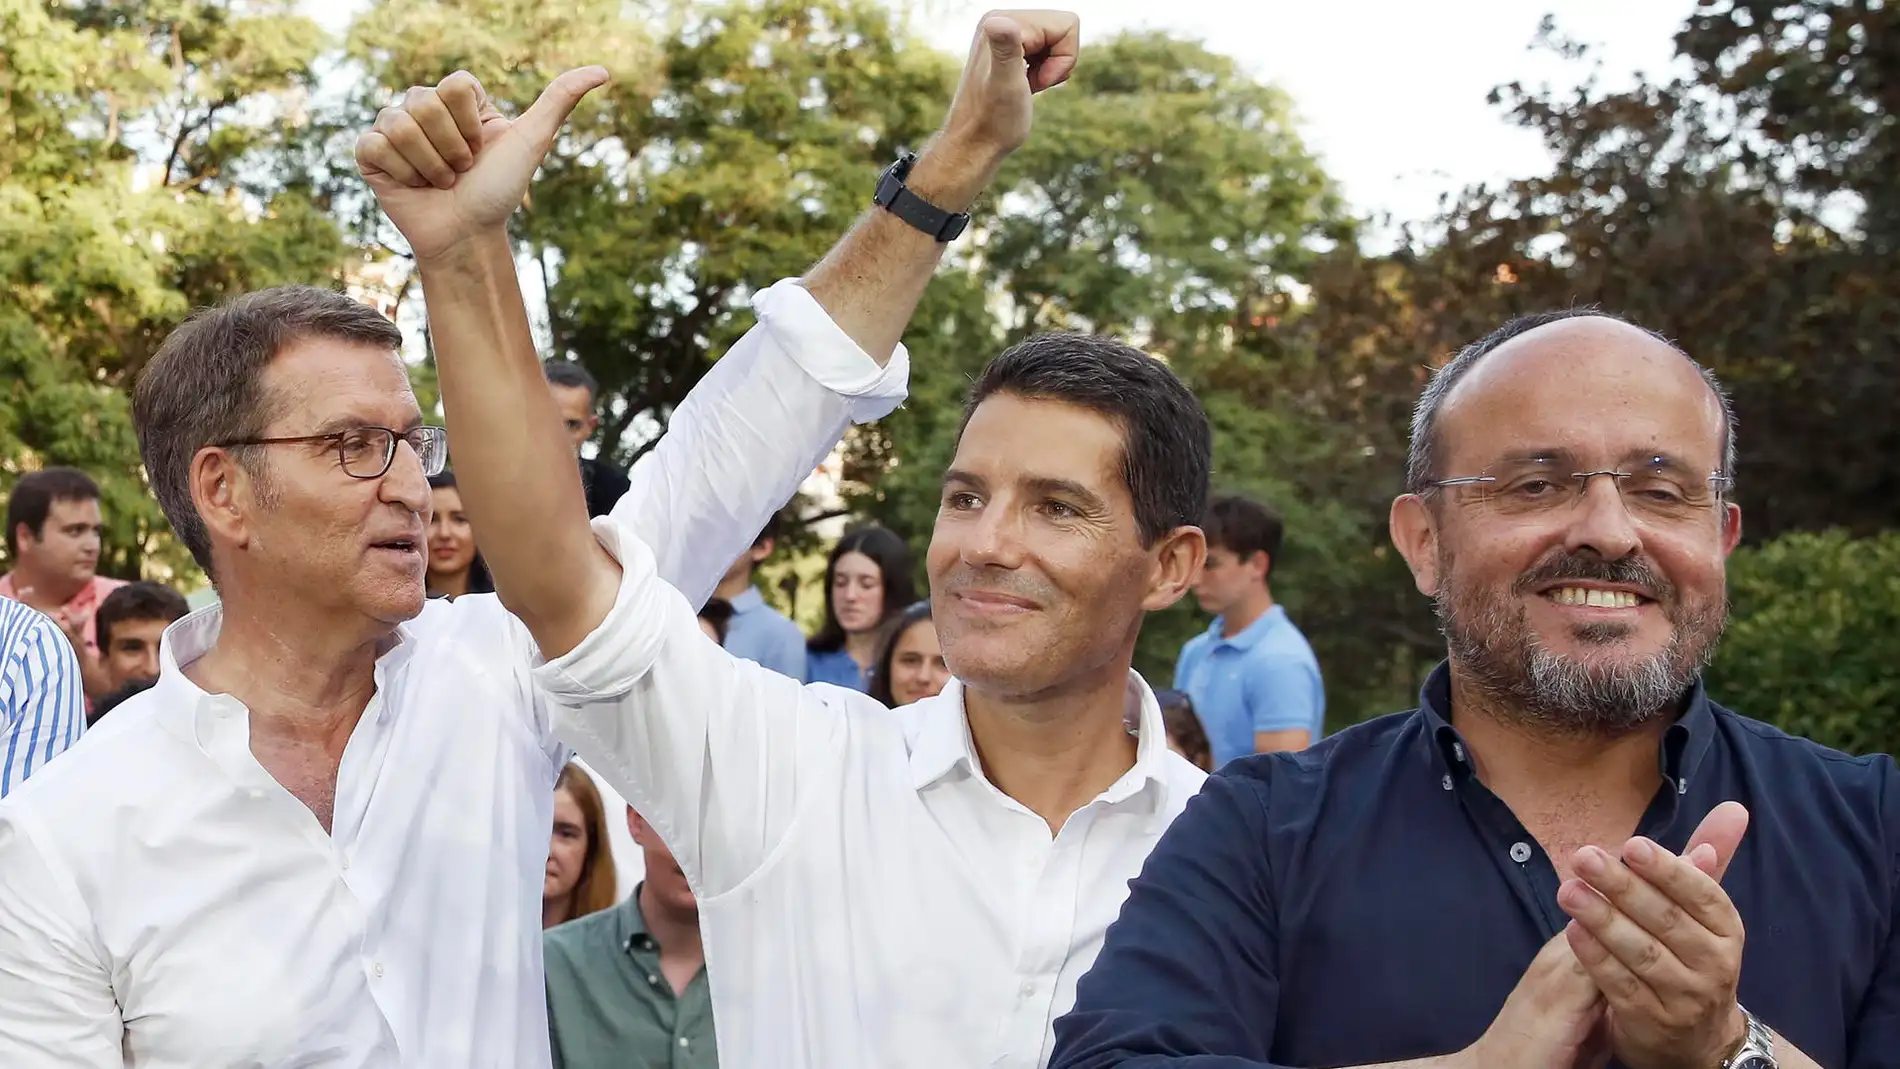 Alejandro Fernández junto a Núñez Feijóo y Nacho Martín, candidato al congreso, en un acto electoral en Cataluña